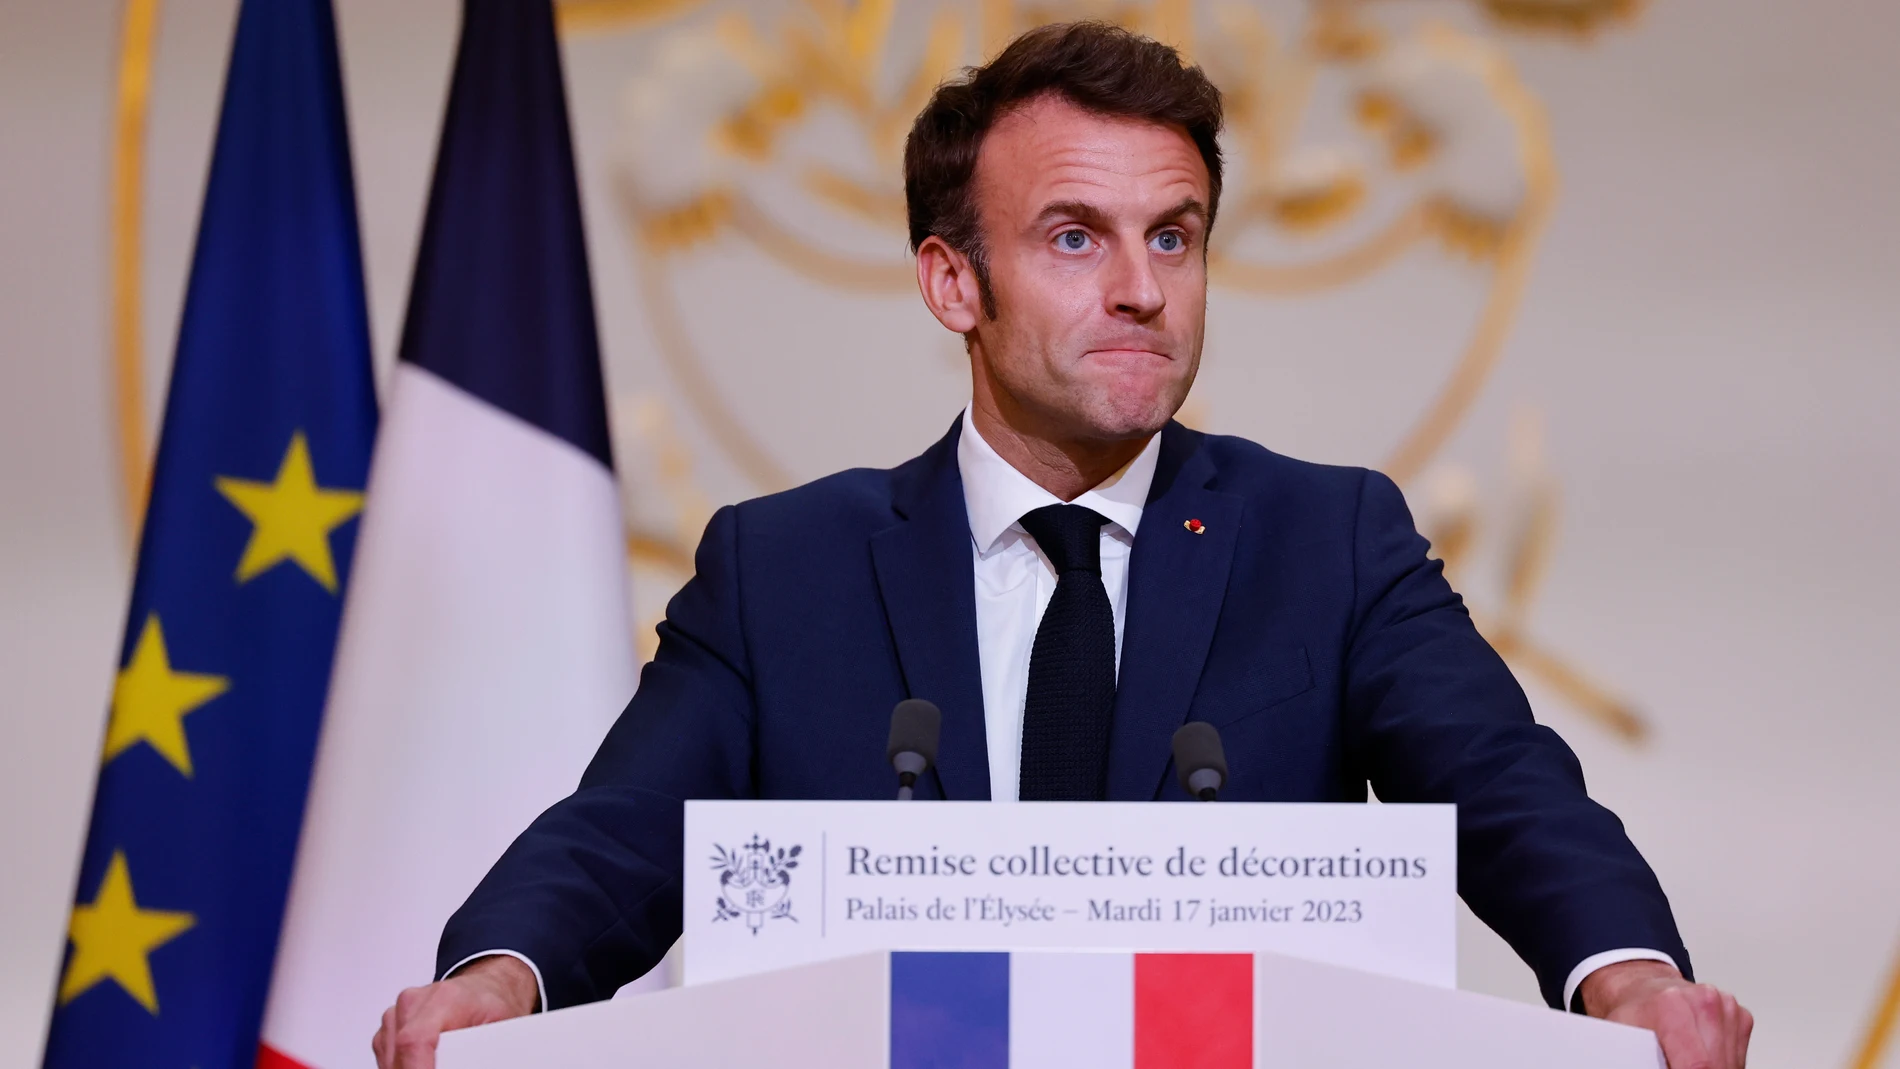 El presidente francés, Emmanuel Macron, pronuncia un discurso el martes 17 en la entrega de unos premios del deporte